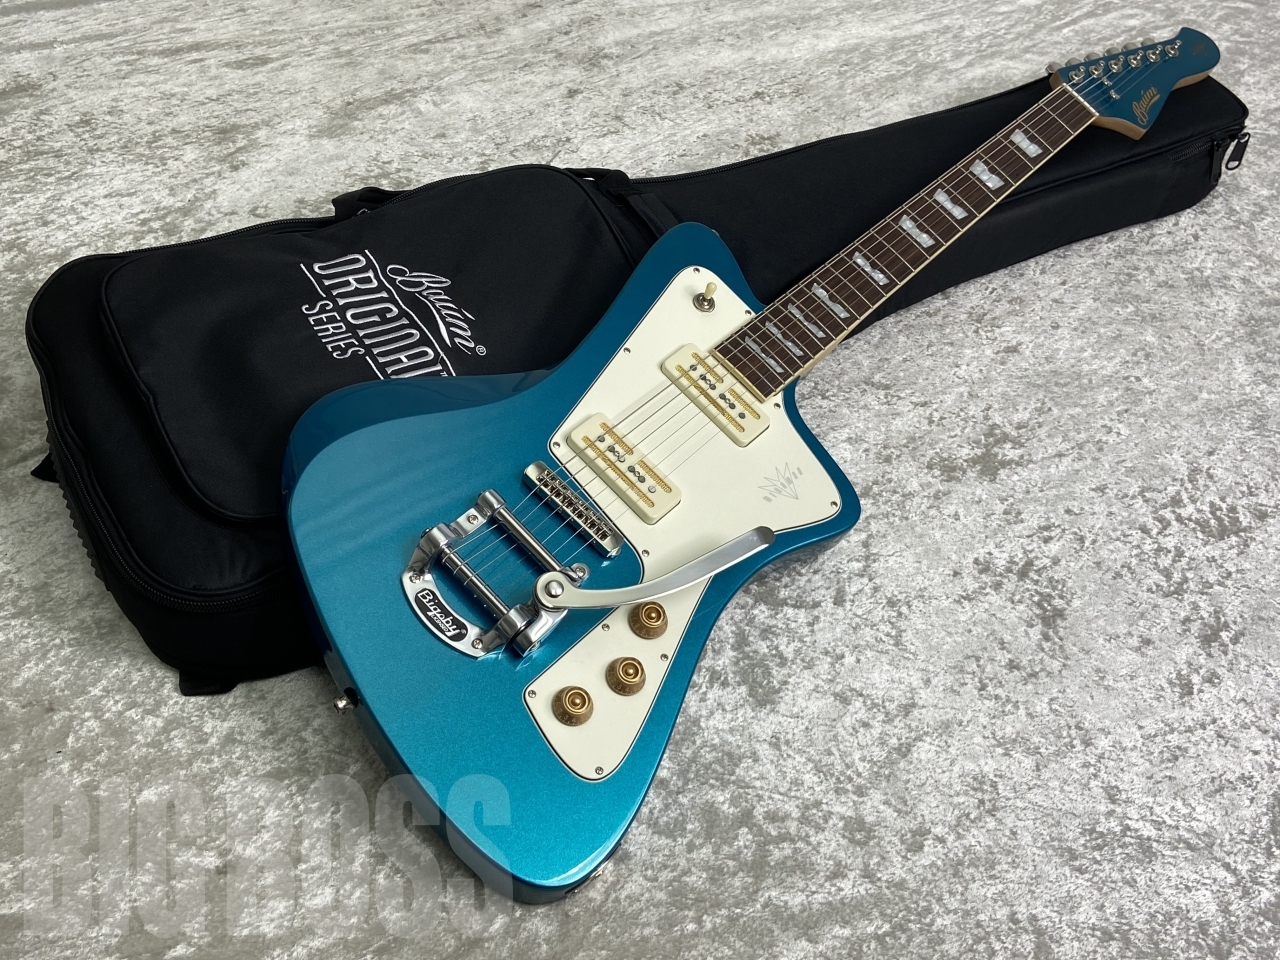 【即納可能】Baum Guitars(バウムギターズ) Wingman with Tremolo / Coral Blue お茶の水駅前店(東京)